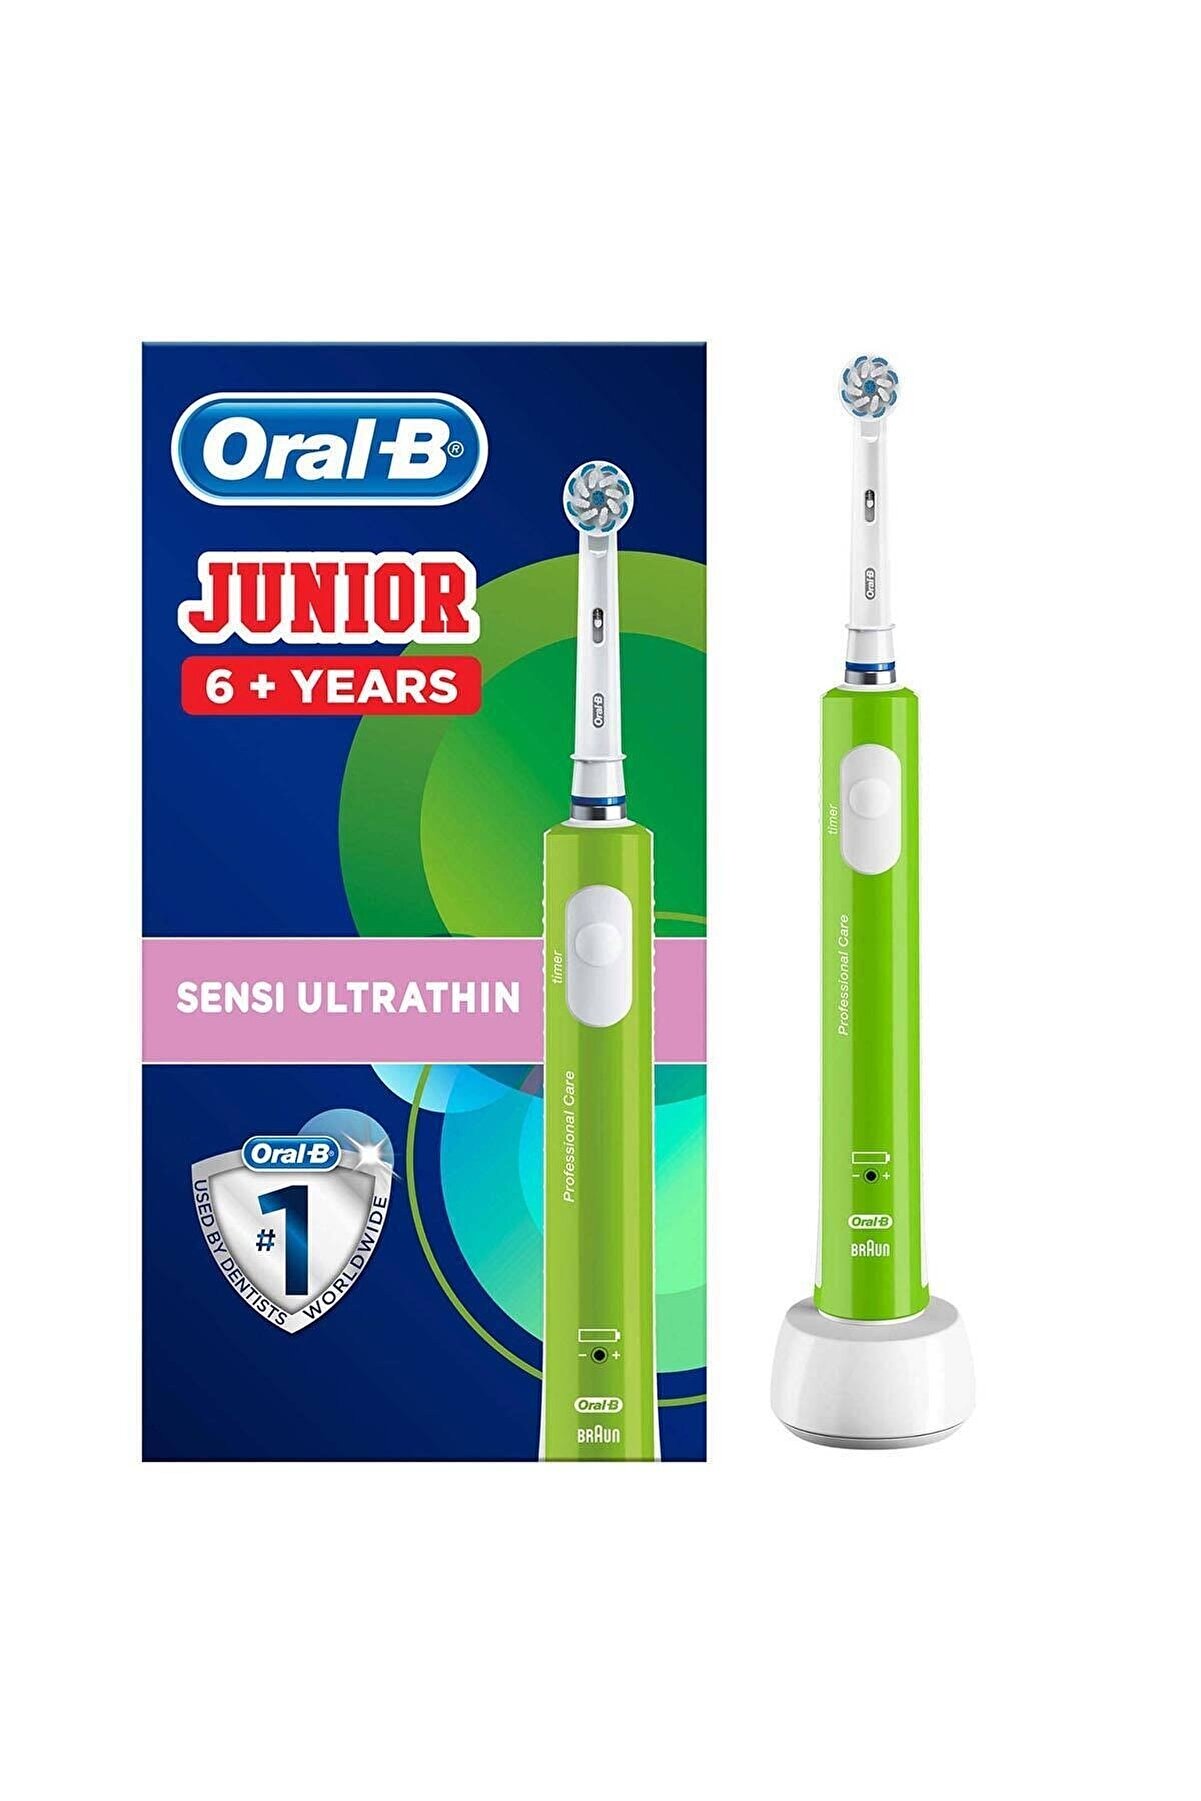 Oral-B Junior Çocuklar Için Şarj Edilebilir Diş Fırçası (6+ Yaş)